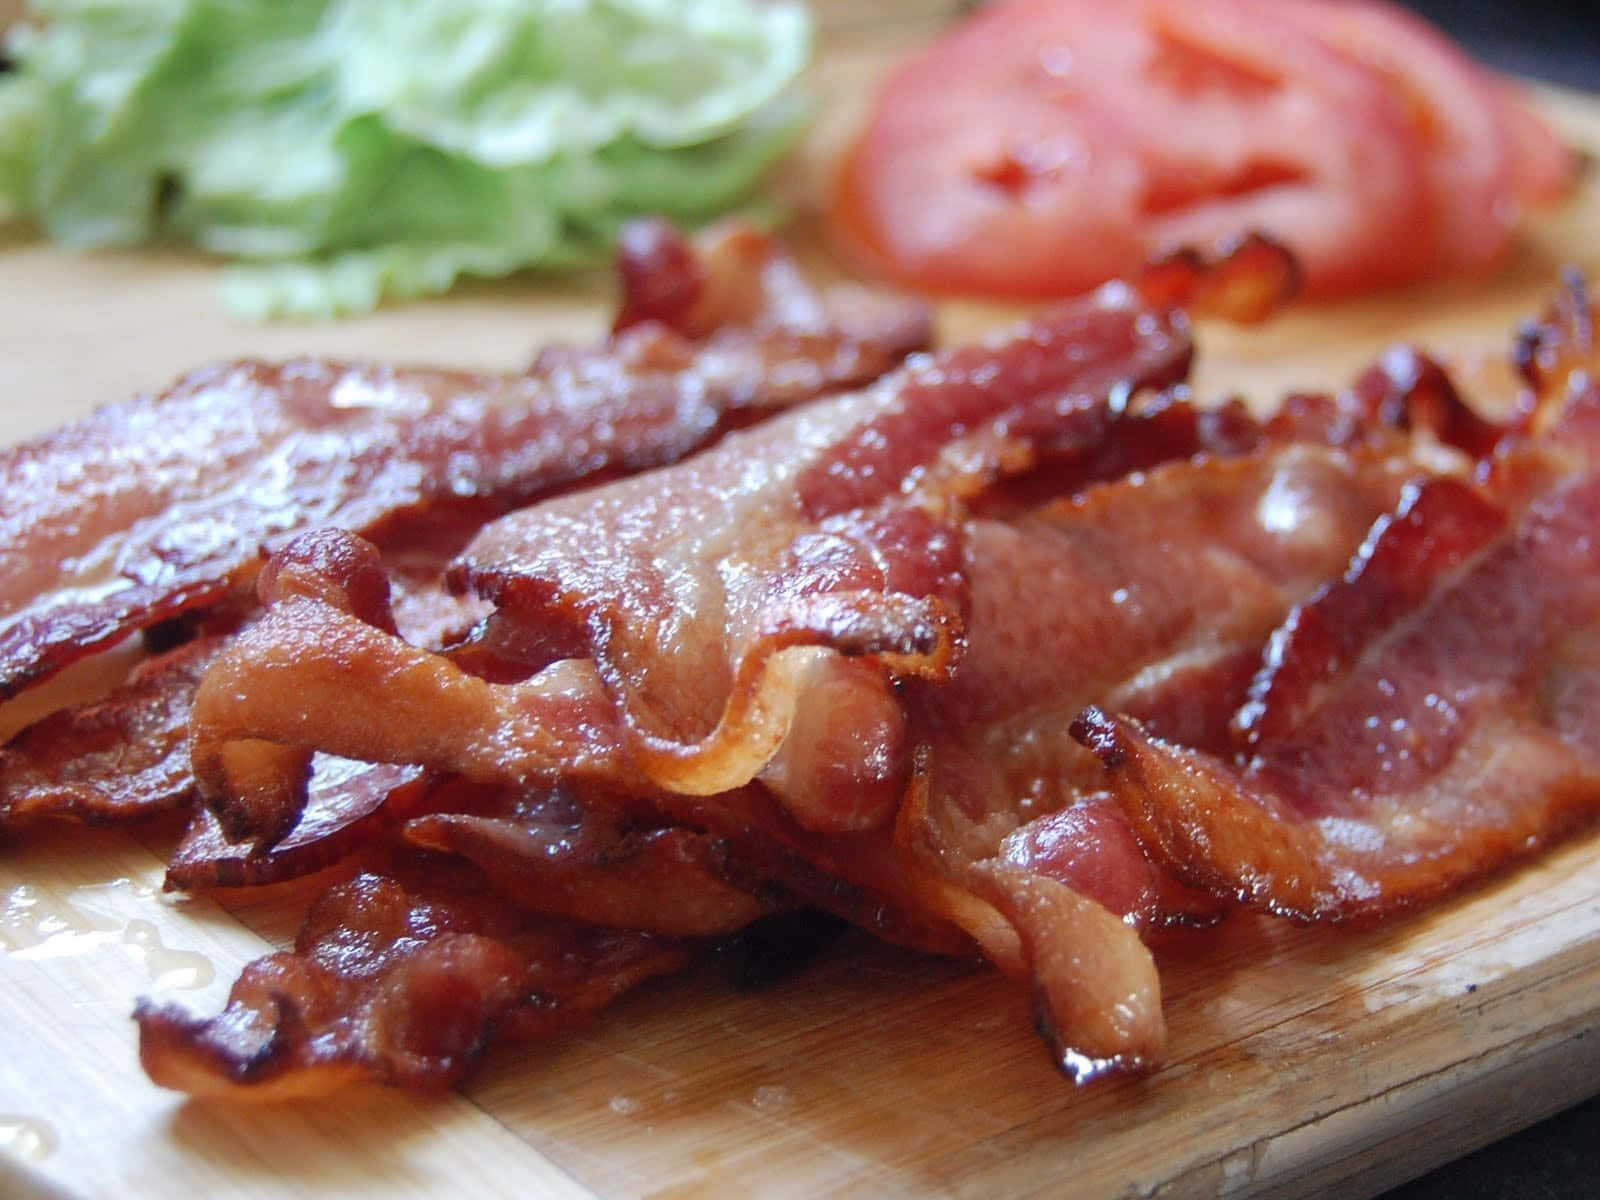 Opresente Perfeito Para Qualquer Amante De Bacon!